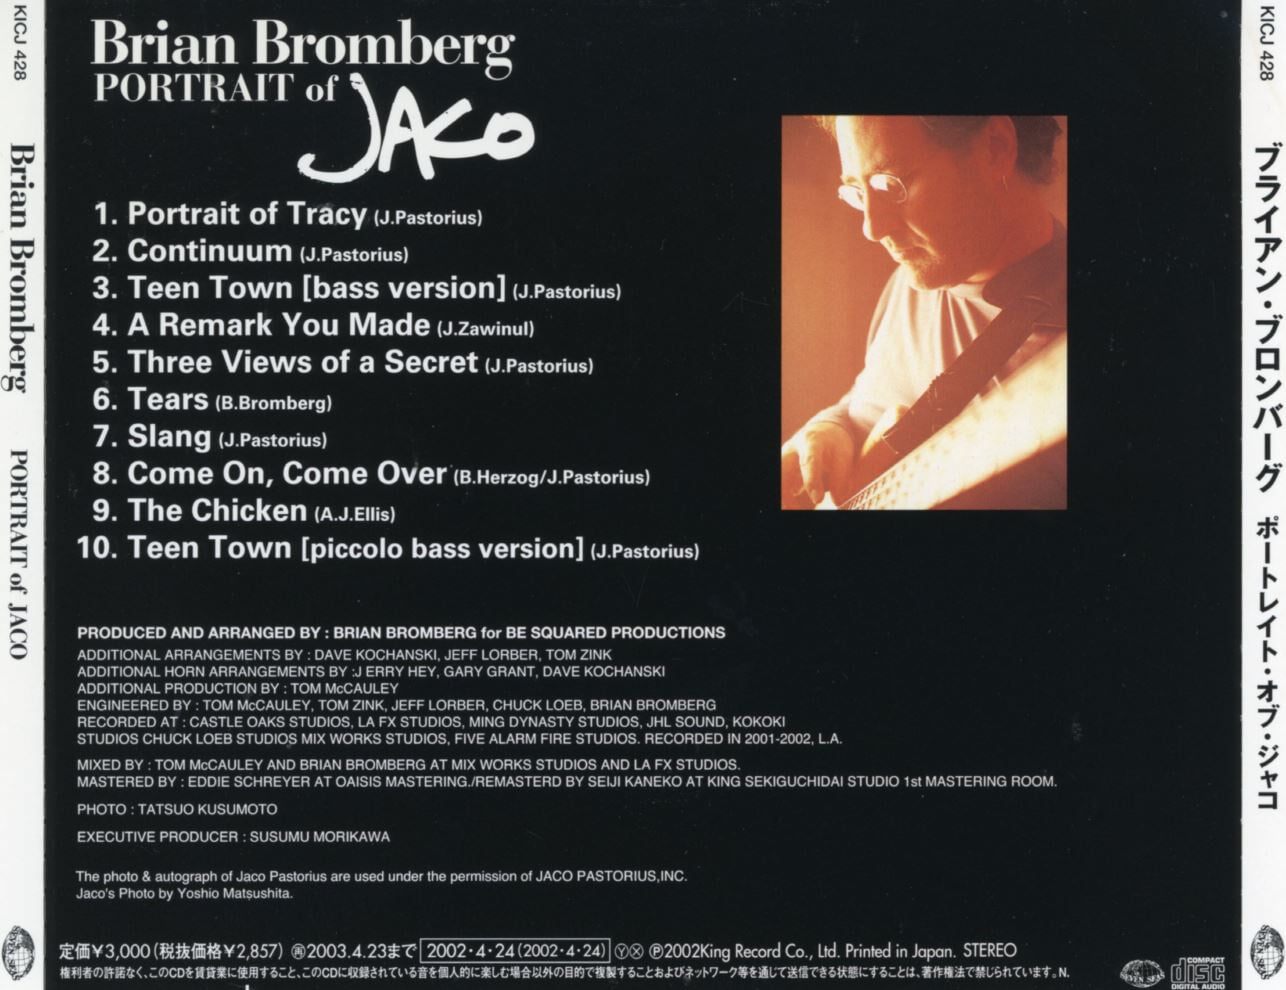 브라이언 브롬버그 - Brian Bromberg - Portrait Of Jaco [일본발매]